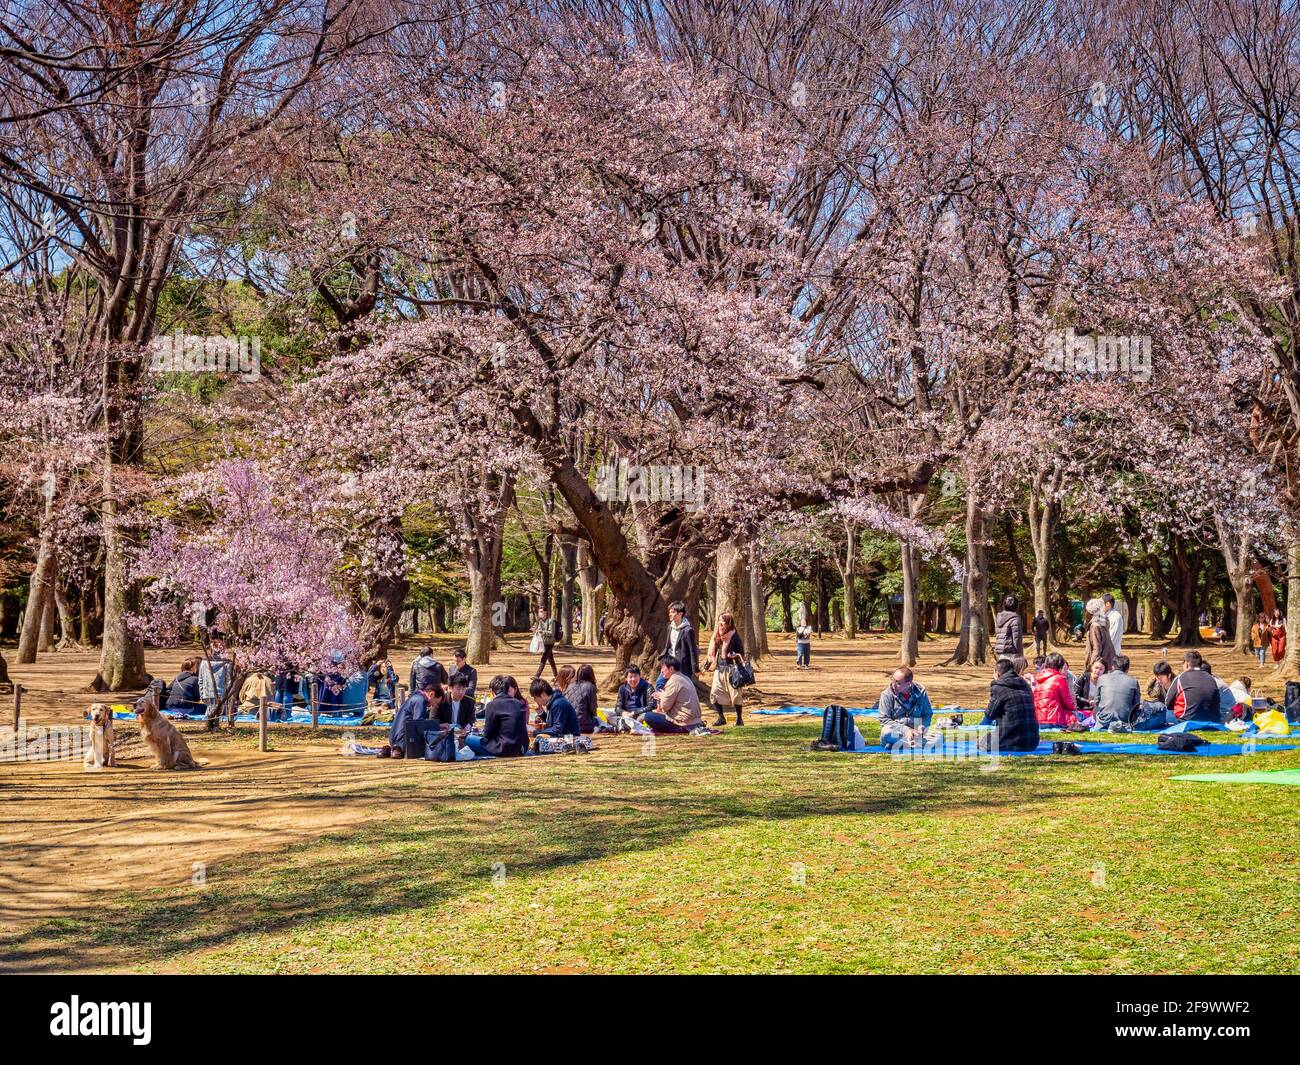 24 marzo 2019: Tokyo, Giappone - la gente si riunisce per gli hanami, la fioritura dei ciliegi, sotto gli alberi nel parco di Yoyogi, Tokyo. Foto Stock